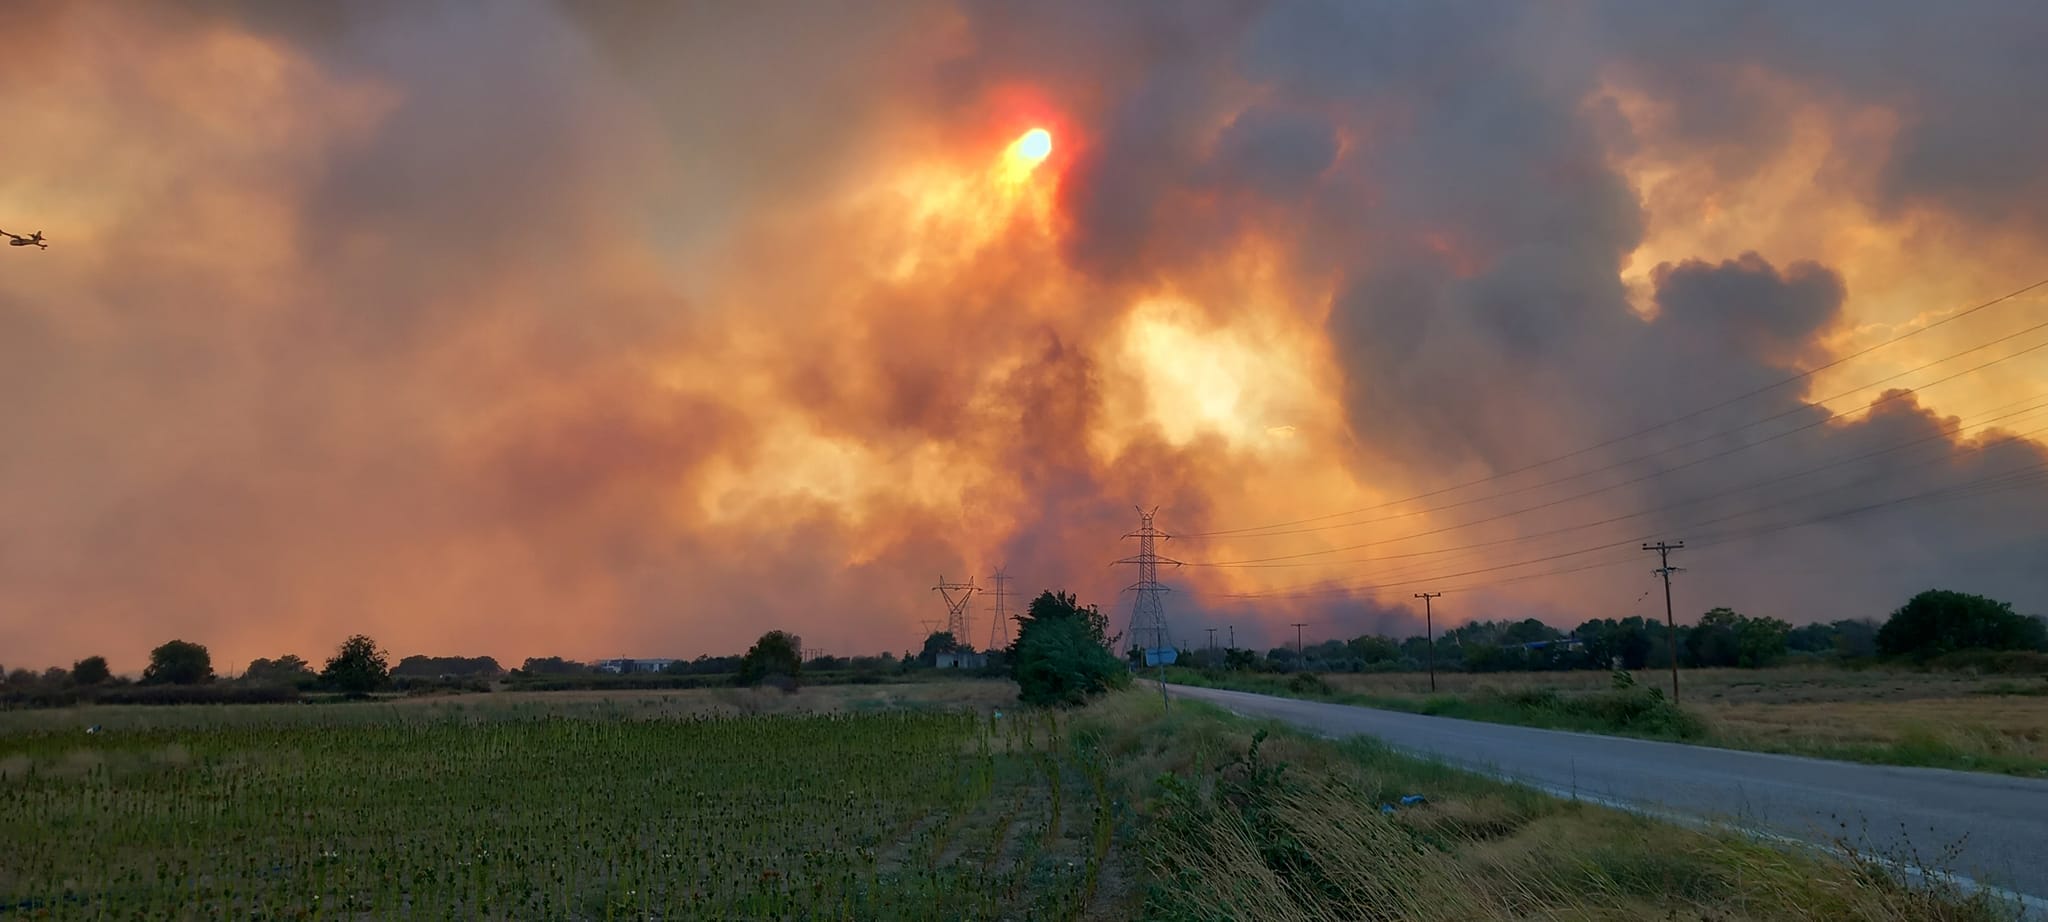 Θράκη – Πυρκαγιές: Απίστευτες εικόνες από τον καπνό που έχει καλύψει τα πάντα! [VIDEO]